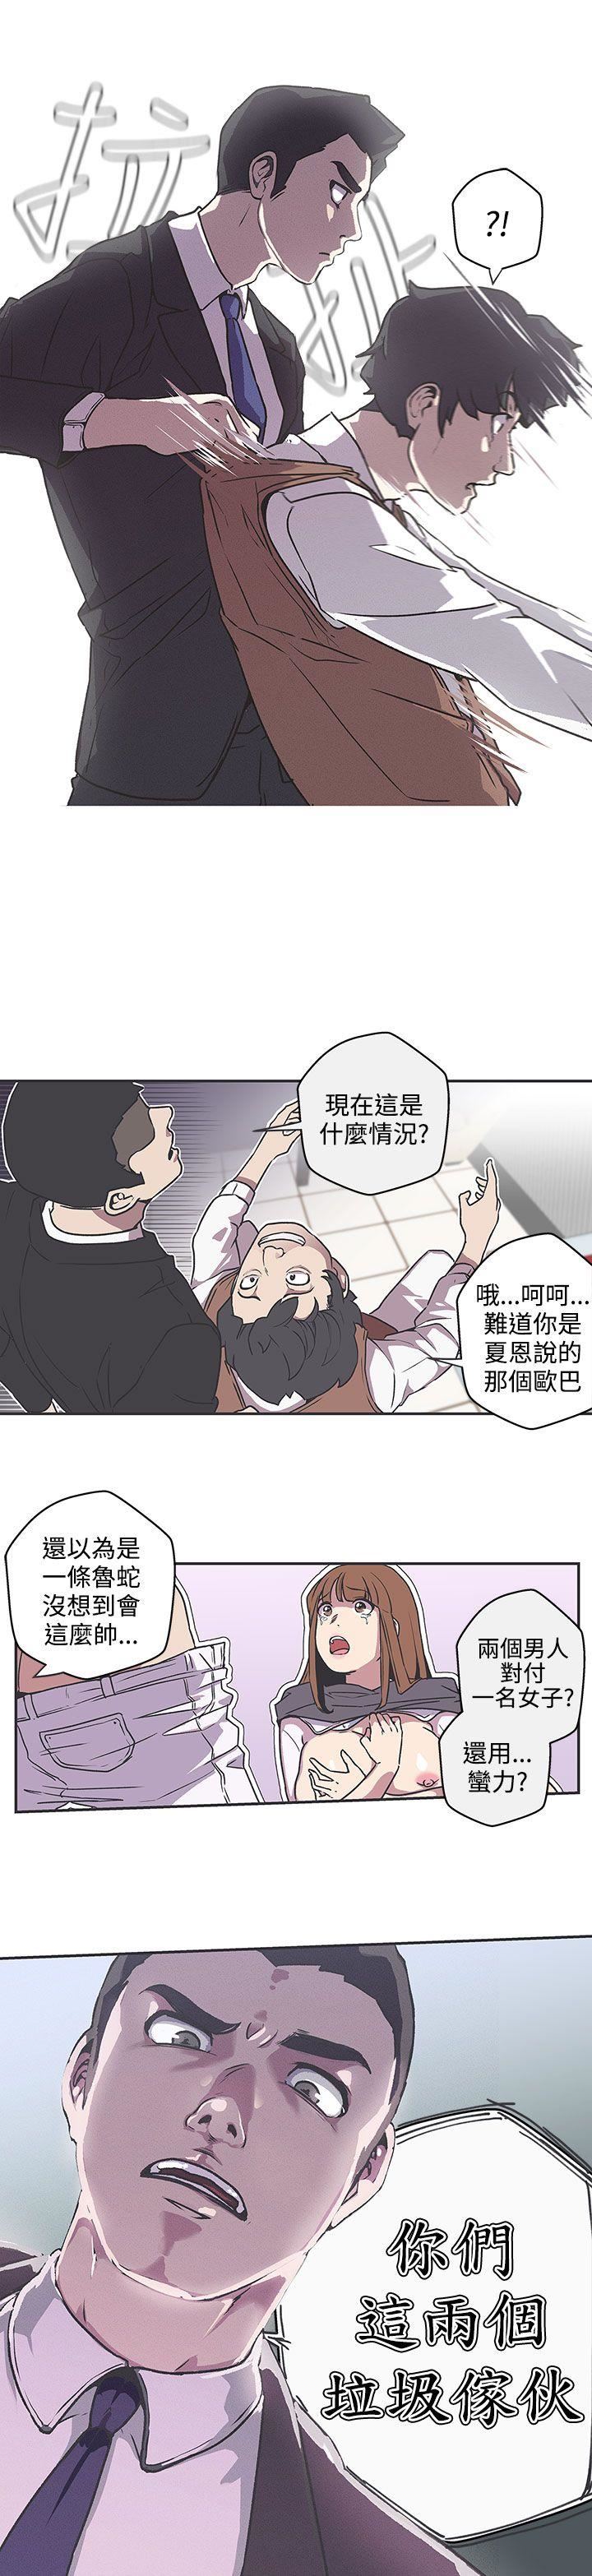 韩国污漫画 LOVE 愛的導航G 第38话 15